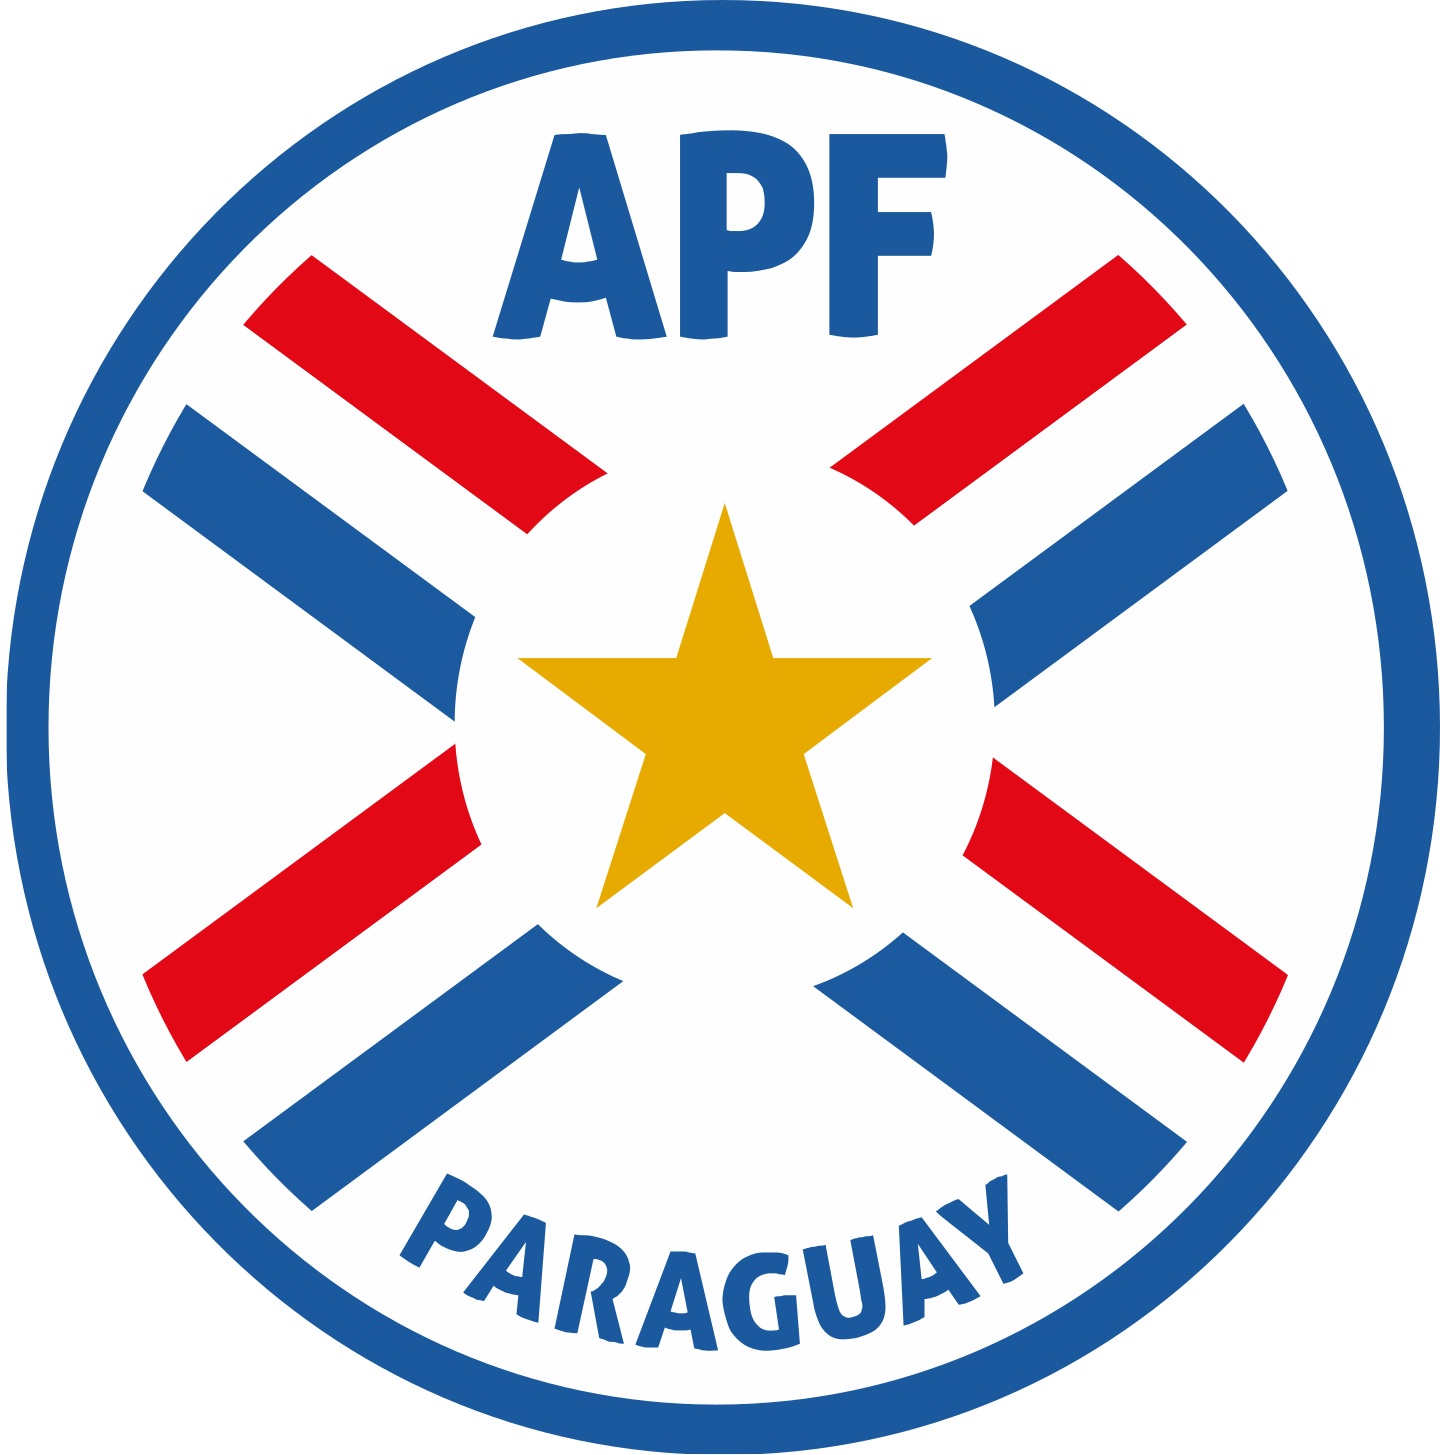 apf seleccion de futbol de paraguay logo 2 - APF Logo - Paraguay National Football Team Logo